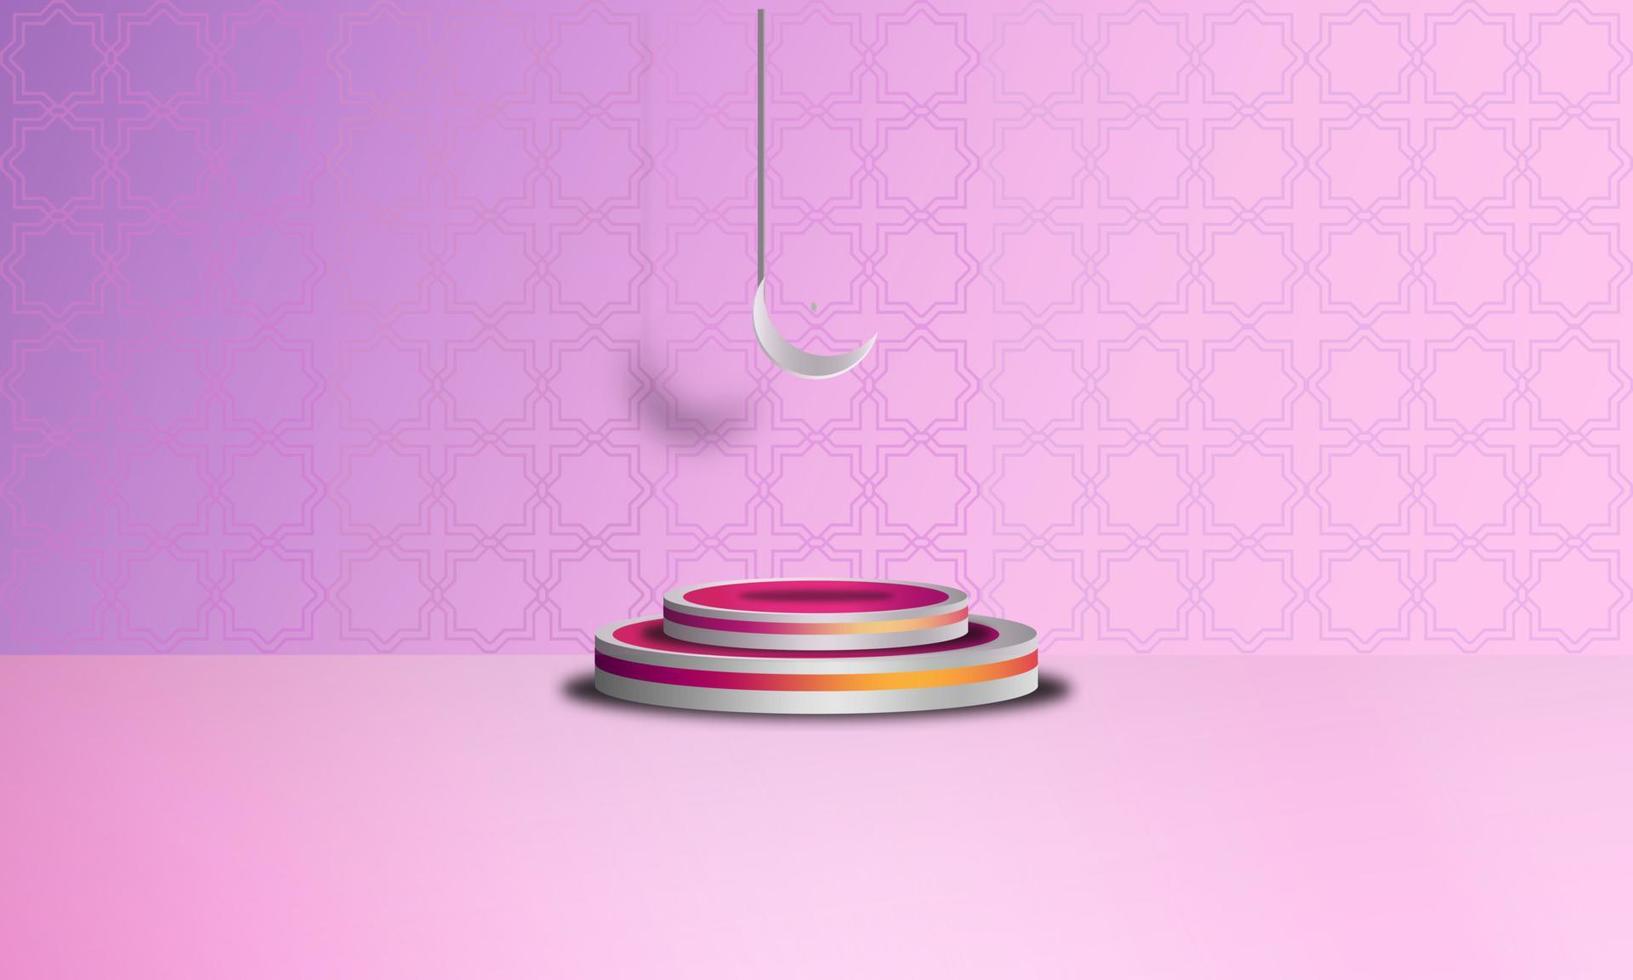 fondo islámico 3d objeto de podio rosa y adorno islámico 3d, diseño vectorial eps 10 vector